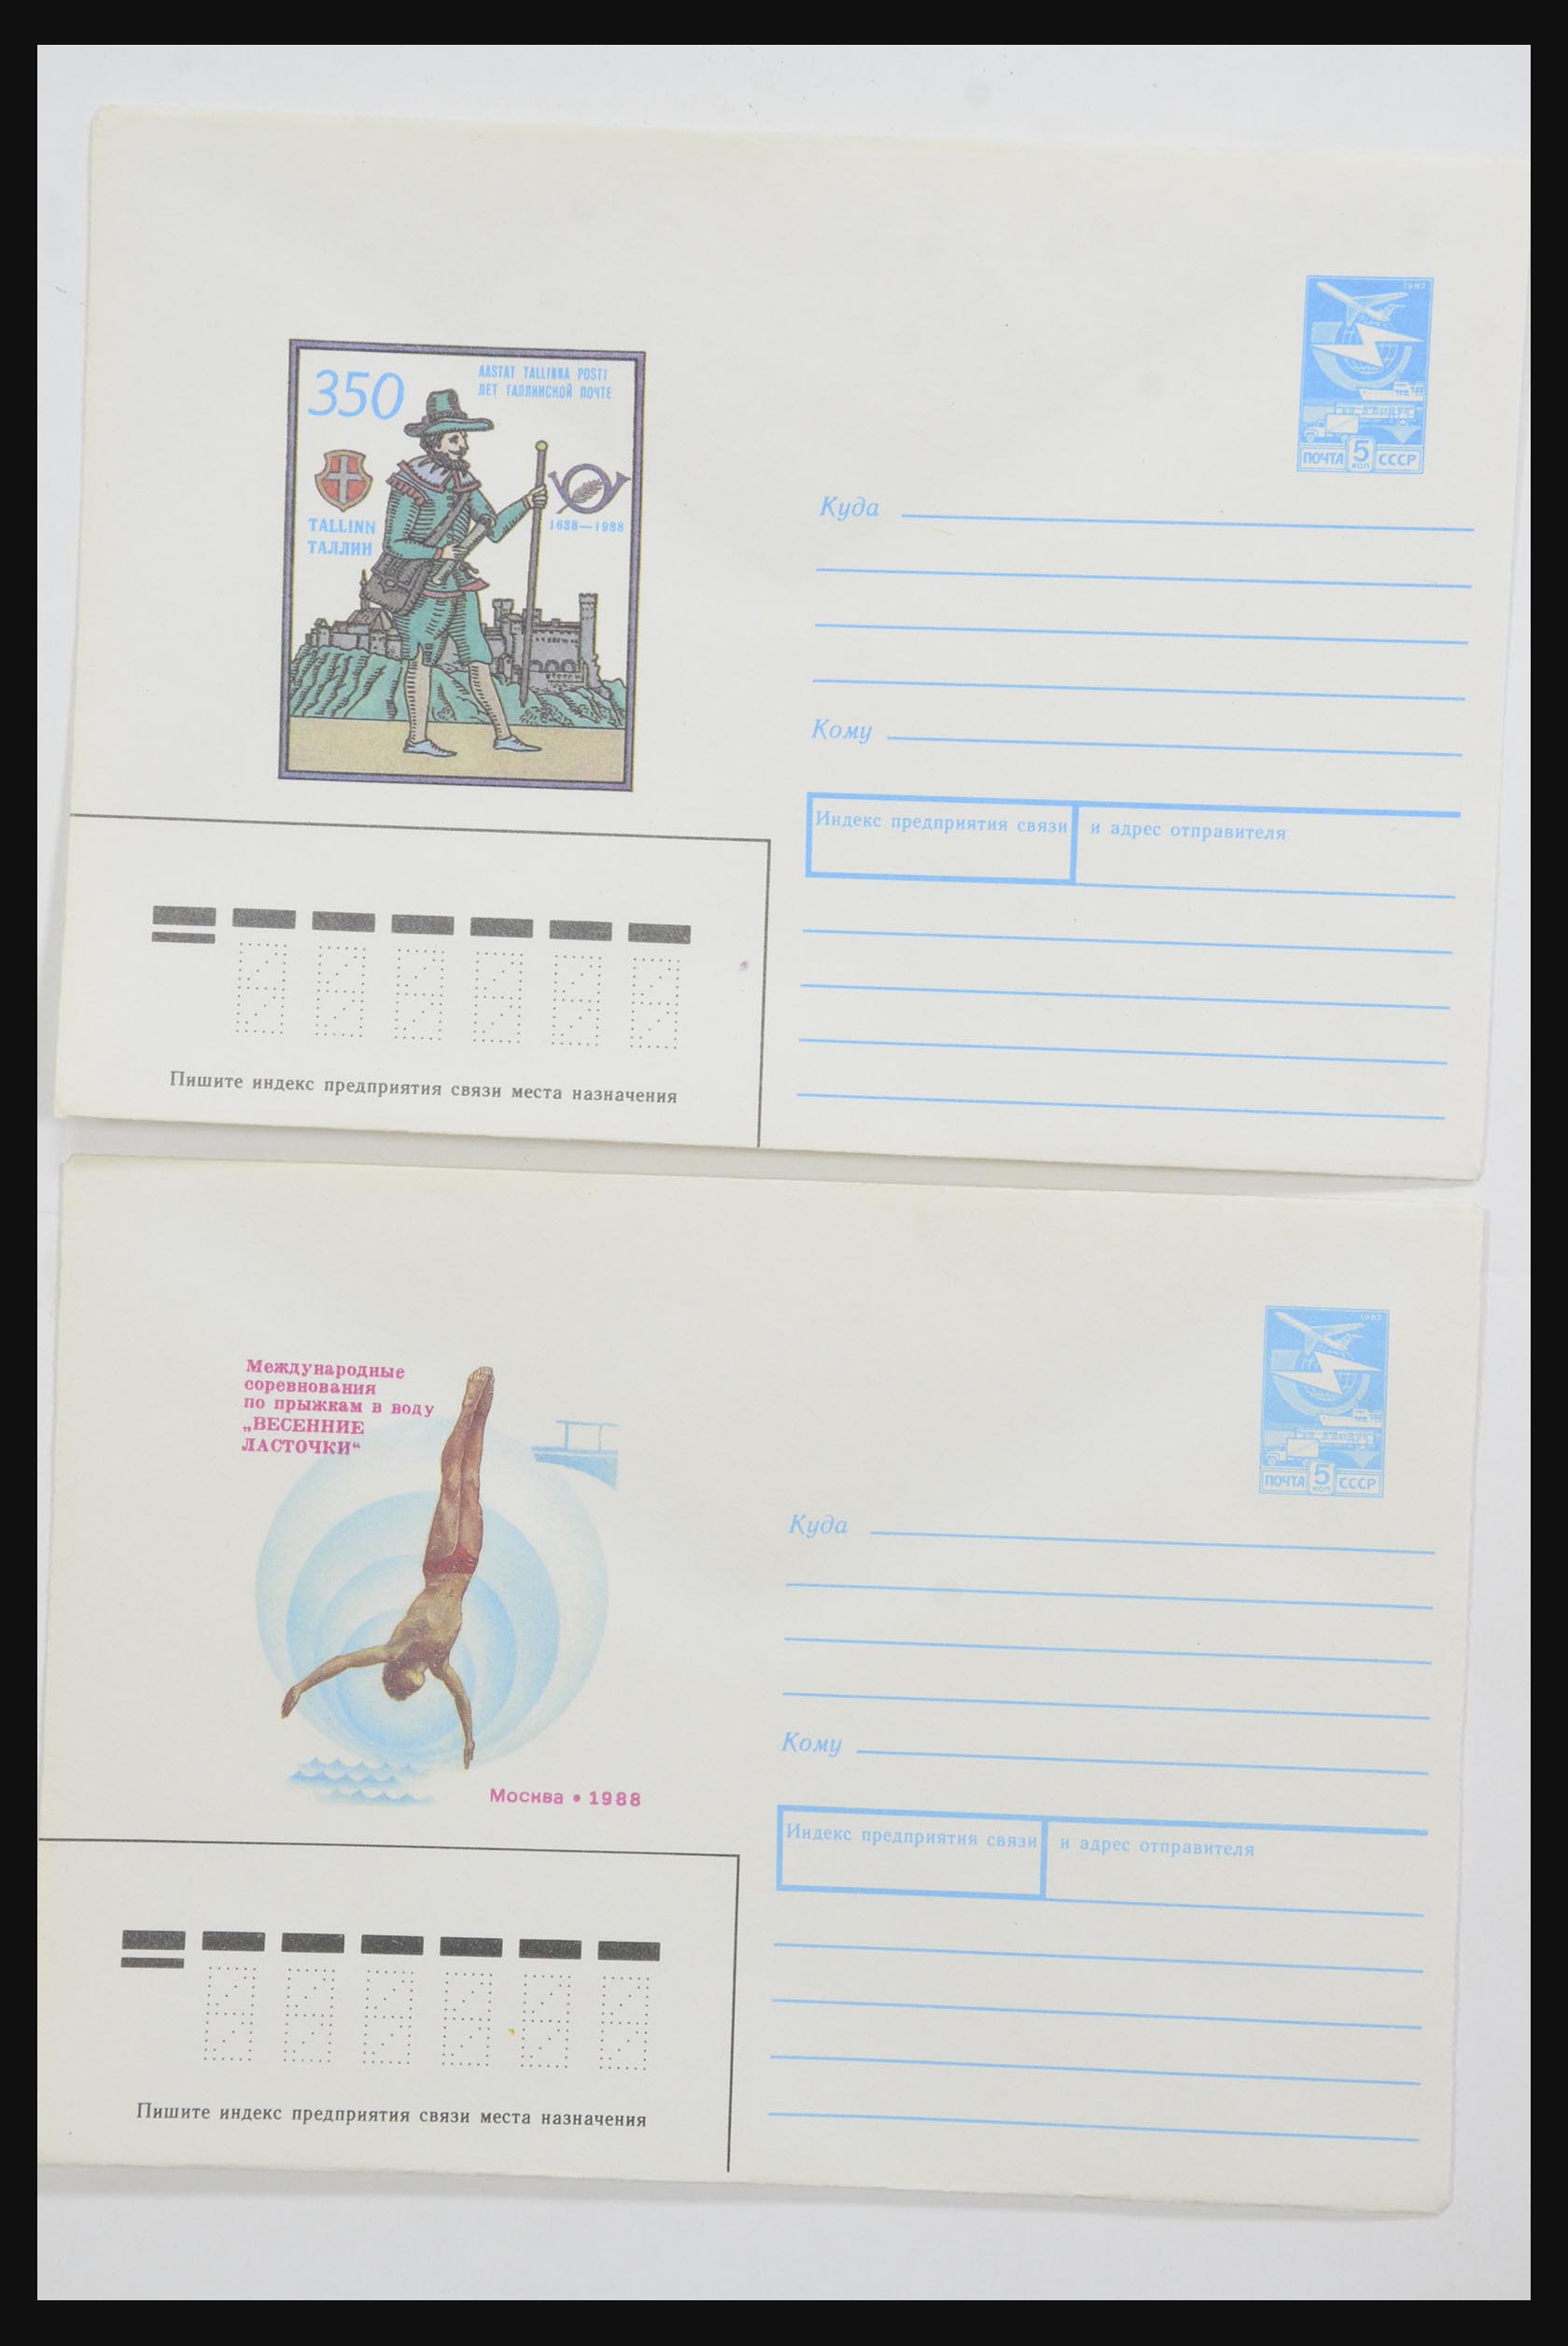 31928 0044 - 31928 Oost Europa brieven jaren 60/90.